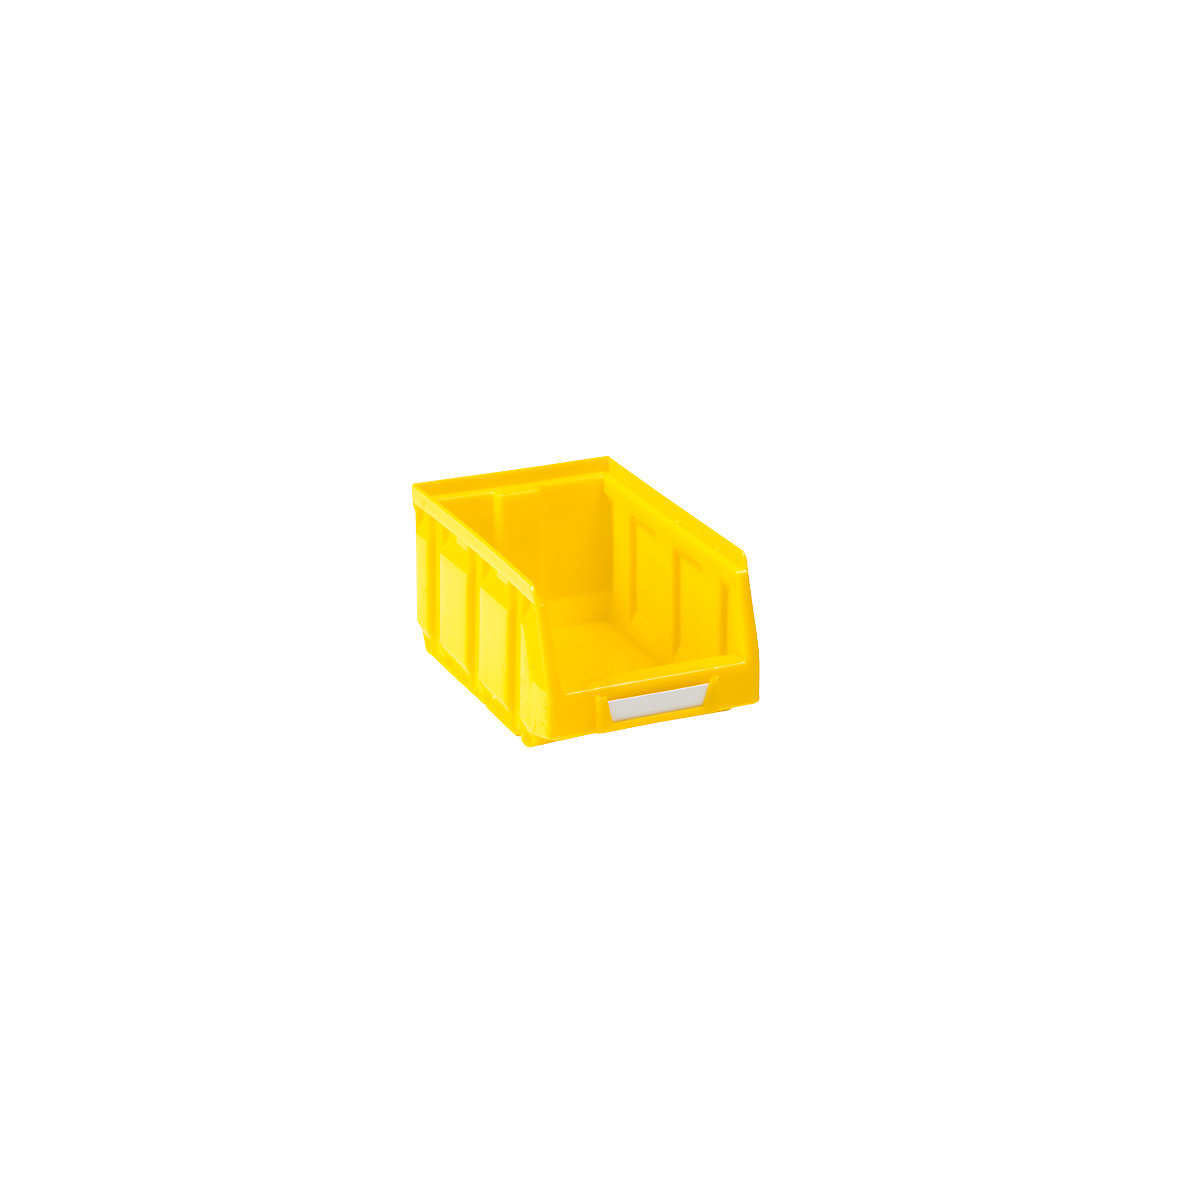 Otvorena skladišna kutija od polietilena, DxŠxV 167 x 105 x 82 mm, u žutoj boji, pak. 48 kom.-11